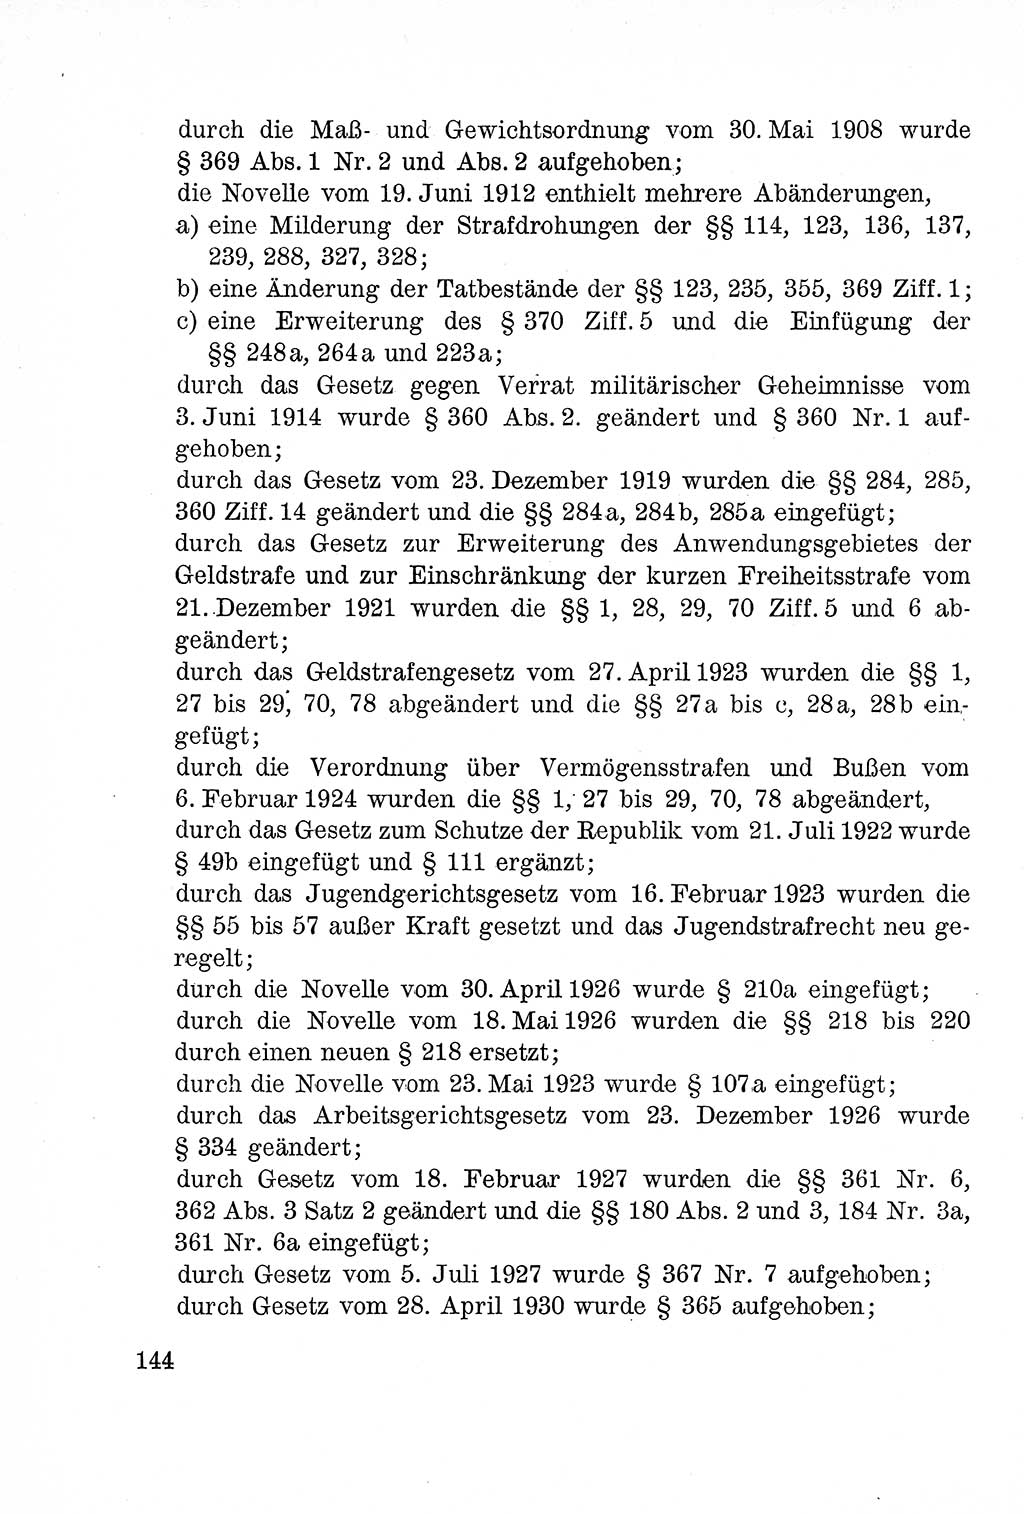 Lehrbuch des Strafrechts der Deutschen Demokratischen Republik (DDR), Allgemeiner Teil 1957, Seite 144 (Lb. Strafr. DDR AT 1957, S. 144)